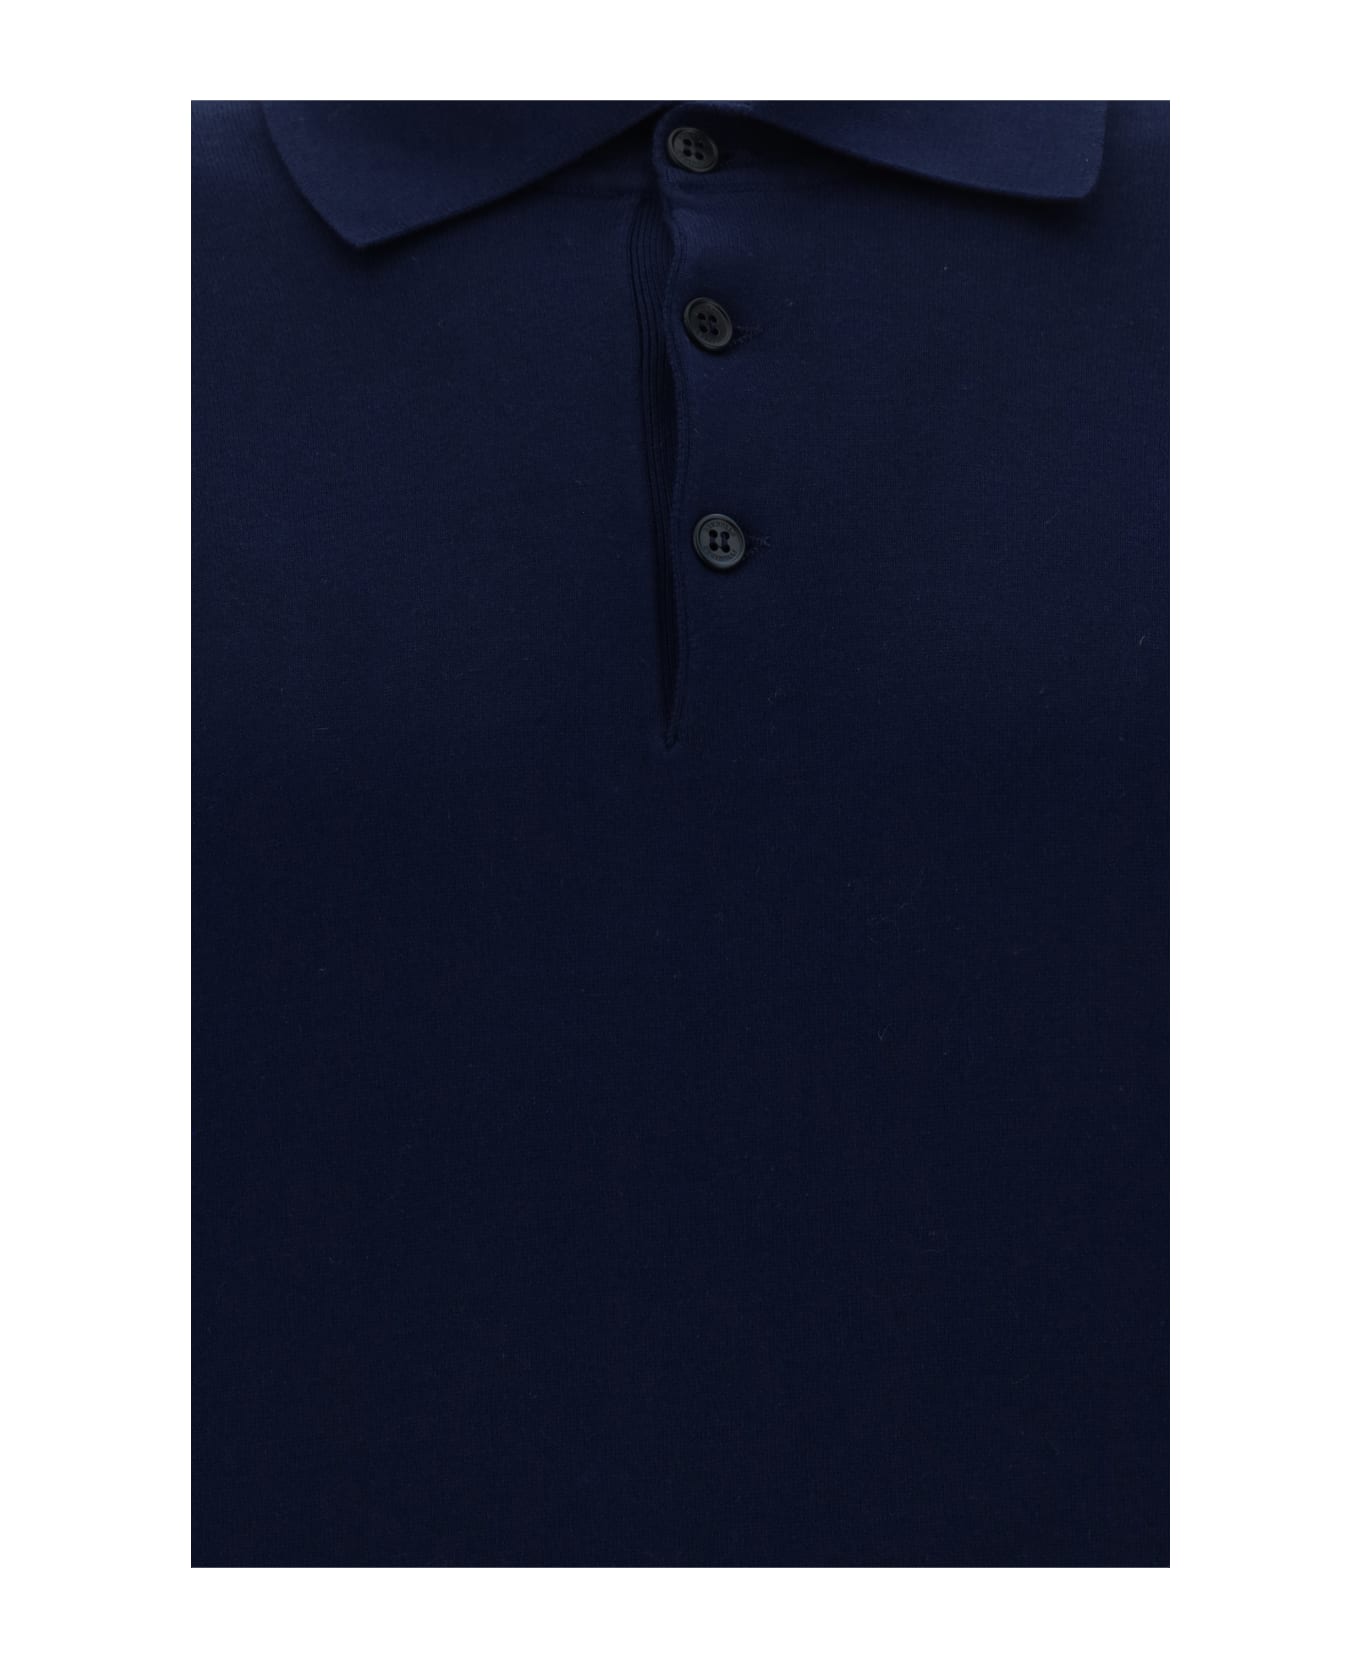 Brunello Cucinelli Knitted Polo Shirt - Blu Prussia+grigio Scuro シャツ